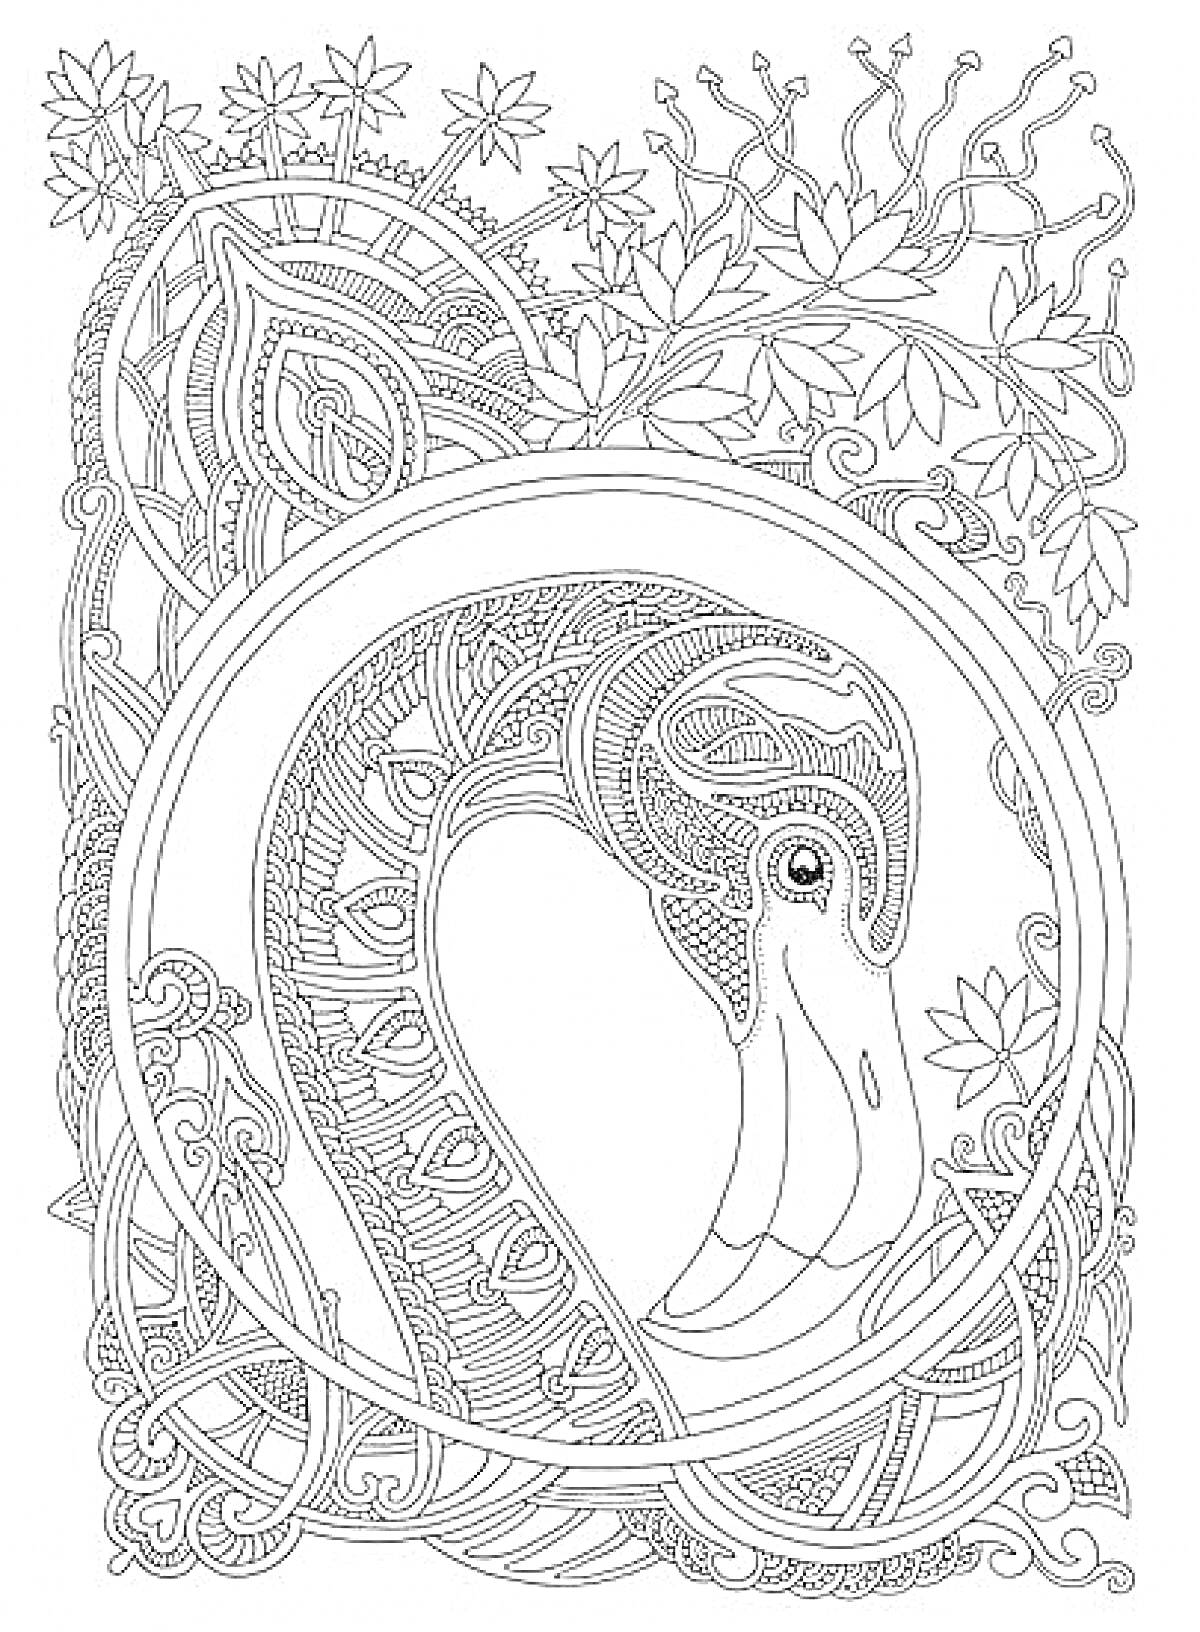 антистресс раскраска с изображением фламинго в декоративной рамке, окруженного узорами и листвой